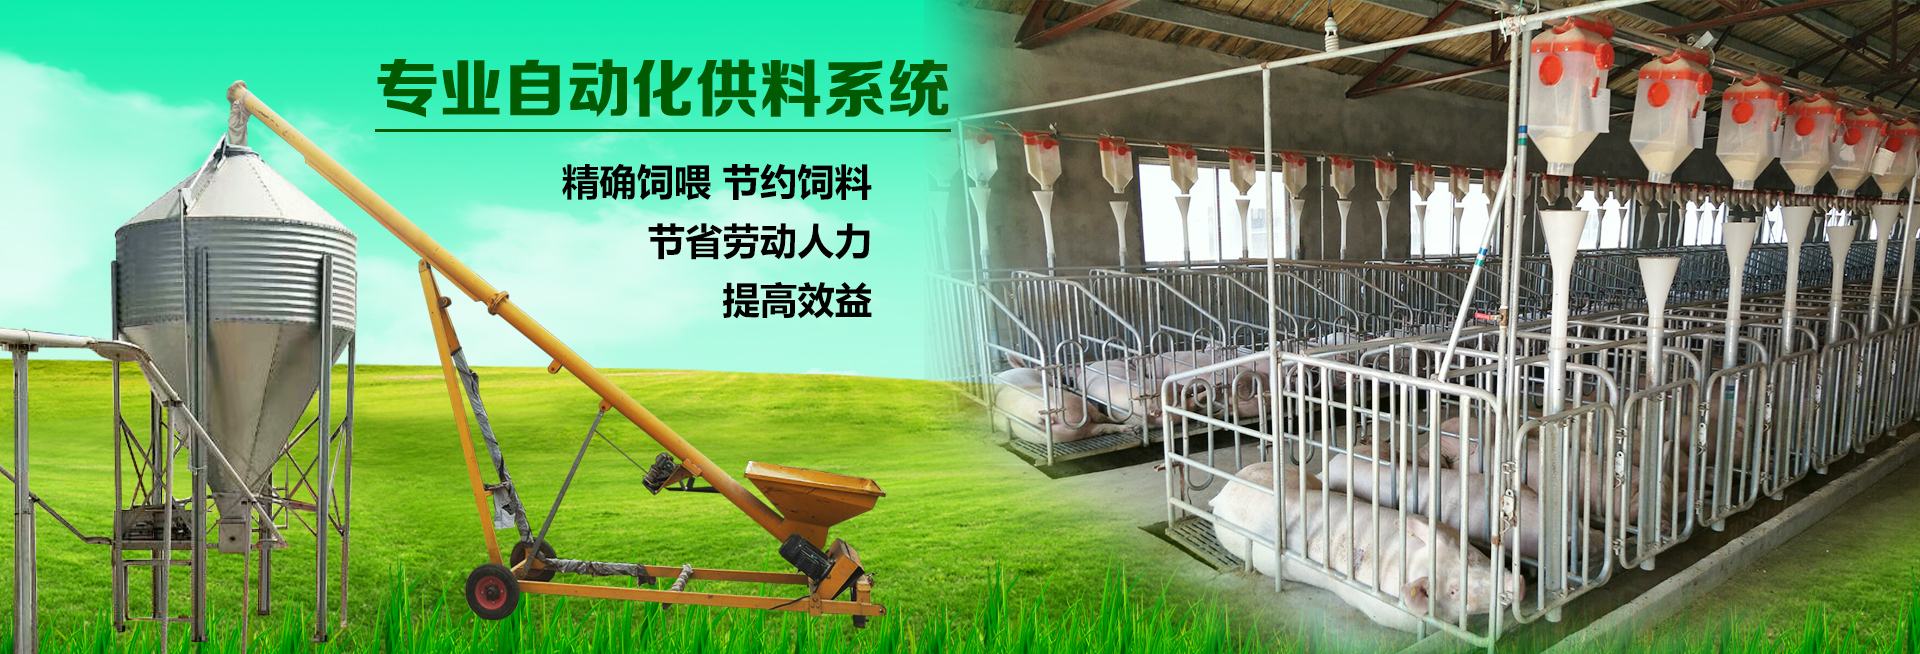 山东佰牧兴猪场自动供料系统